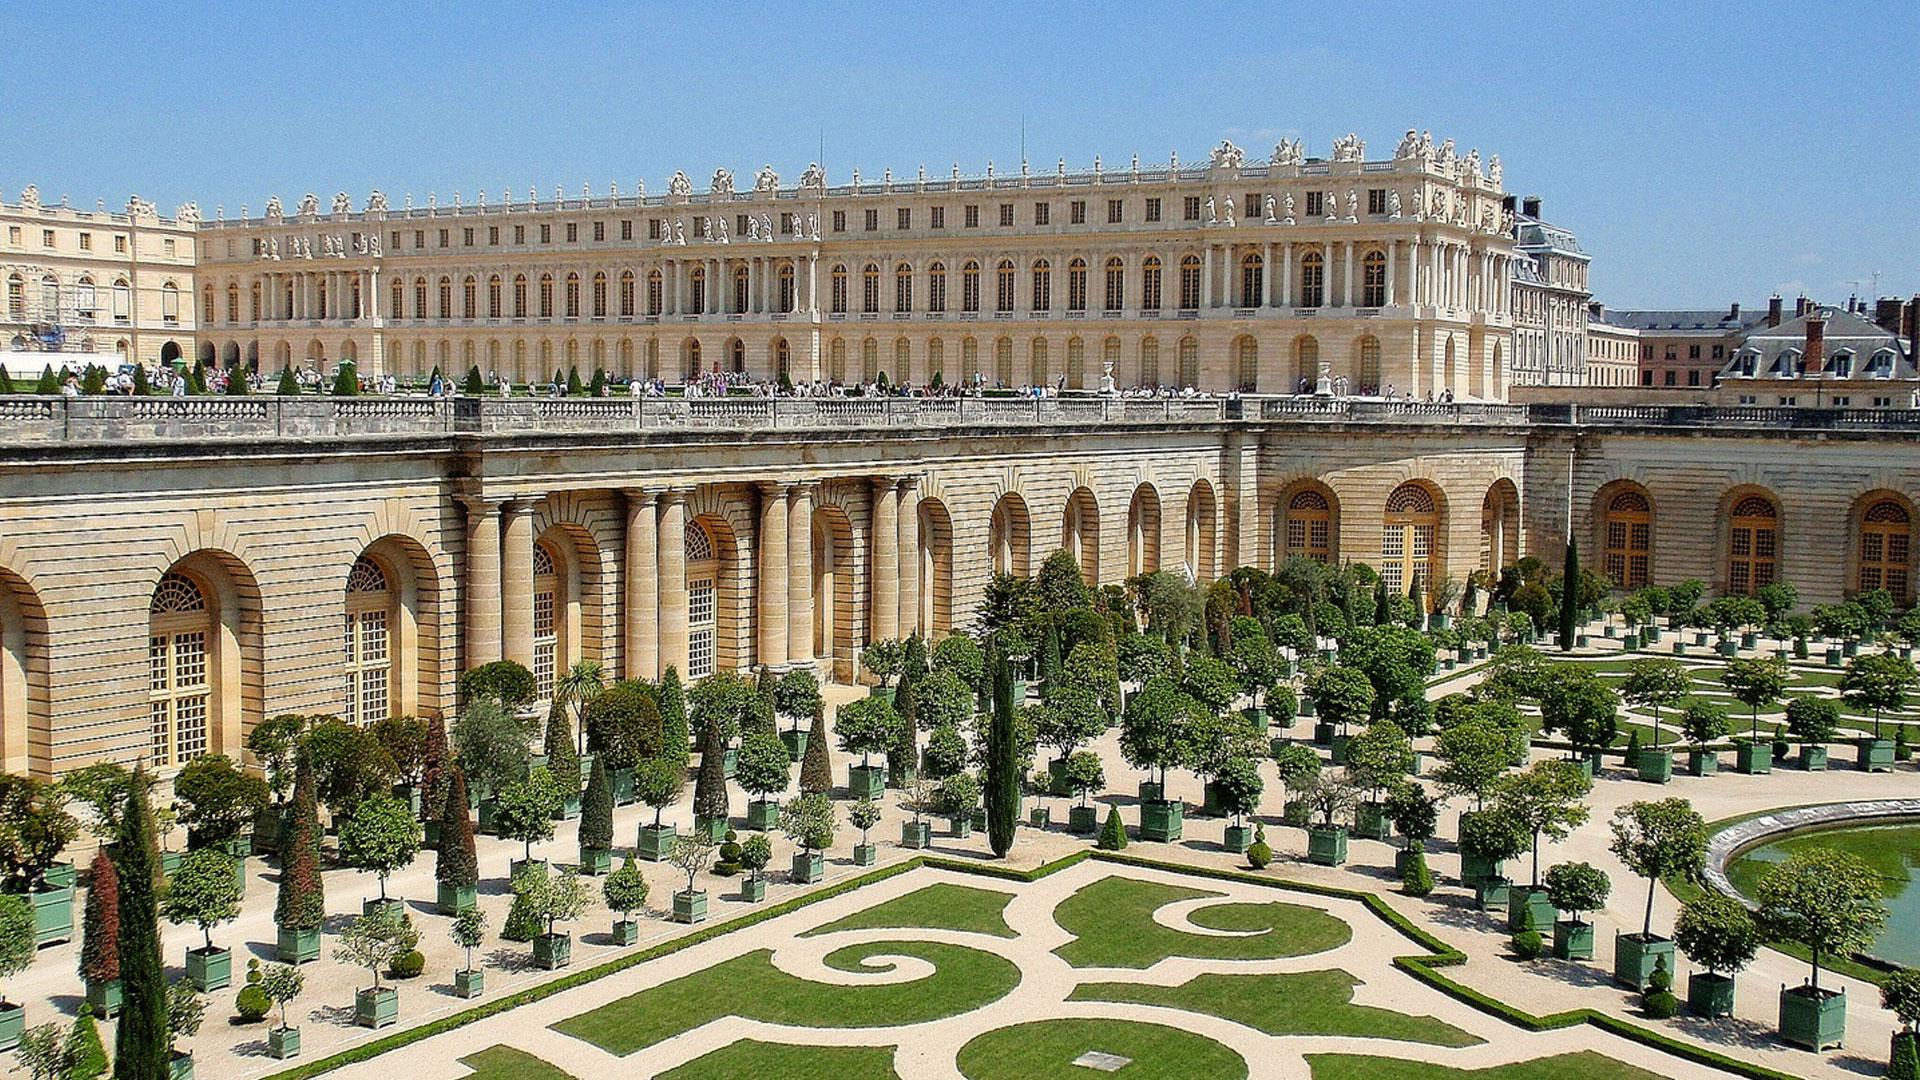 Chateau de versailles. Версальский дворец Версаль Франция. Парковый ансамбль Версаля во Франции. Королевский дворец и парк в Версале. Королевская резиденция Версаль.